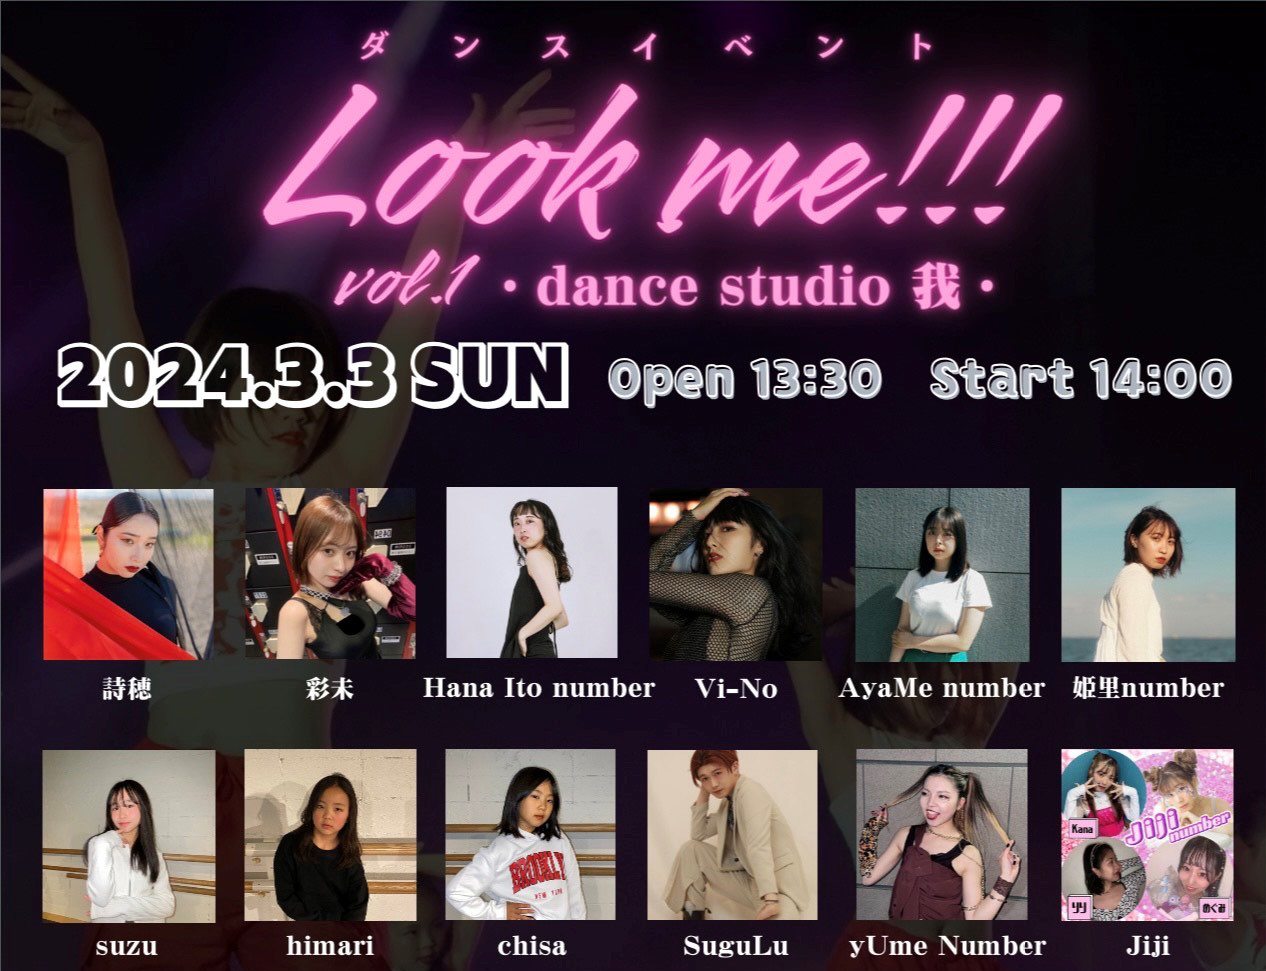 Look me!!! vol.1 ～dance studio 我～<br>2024年3月3日(日)